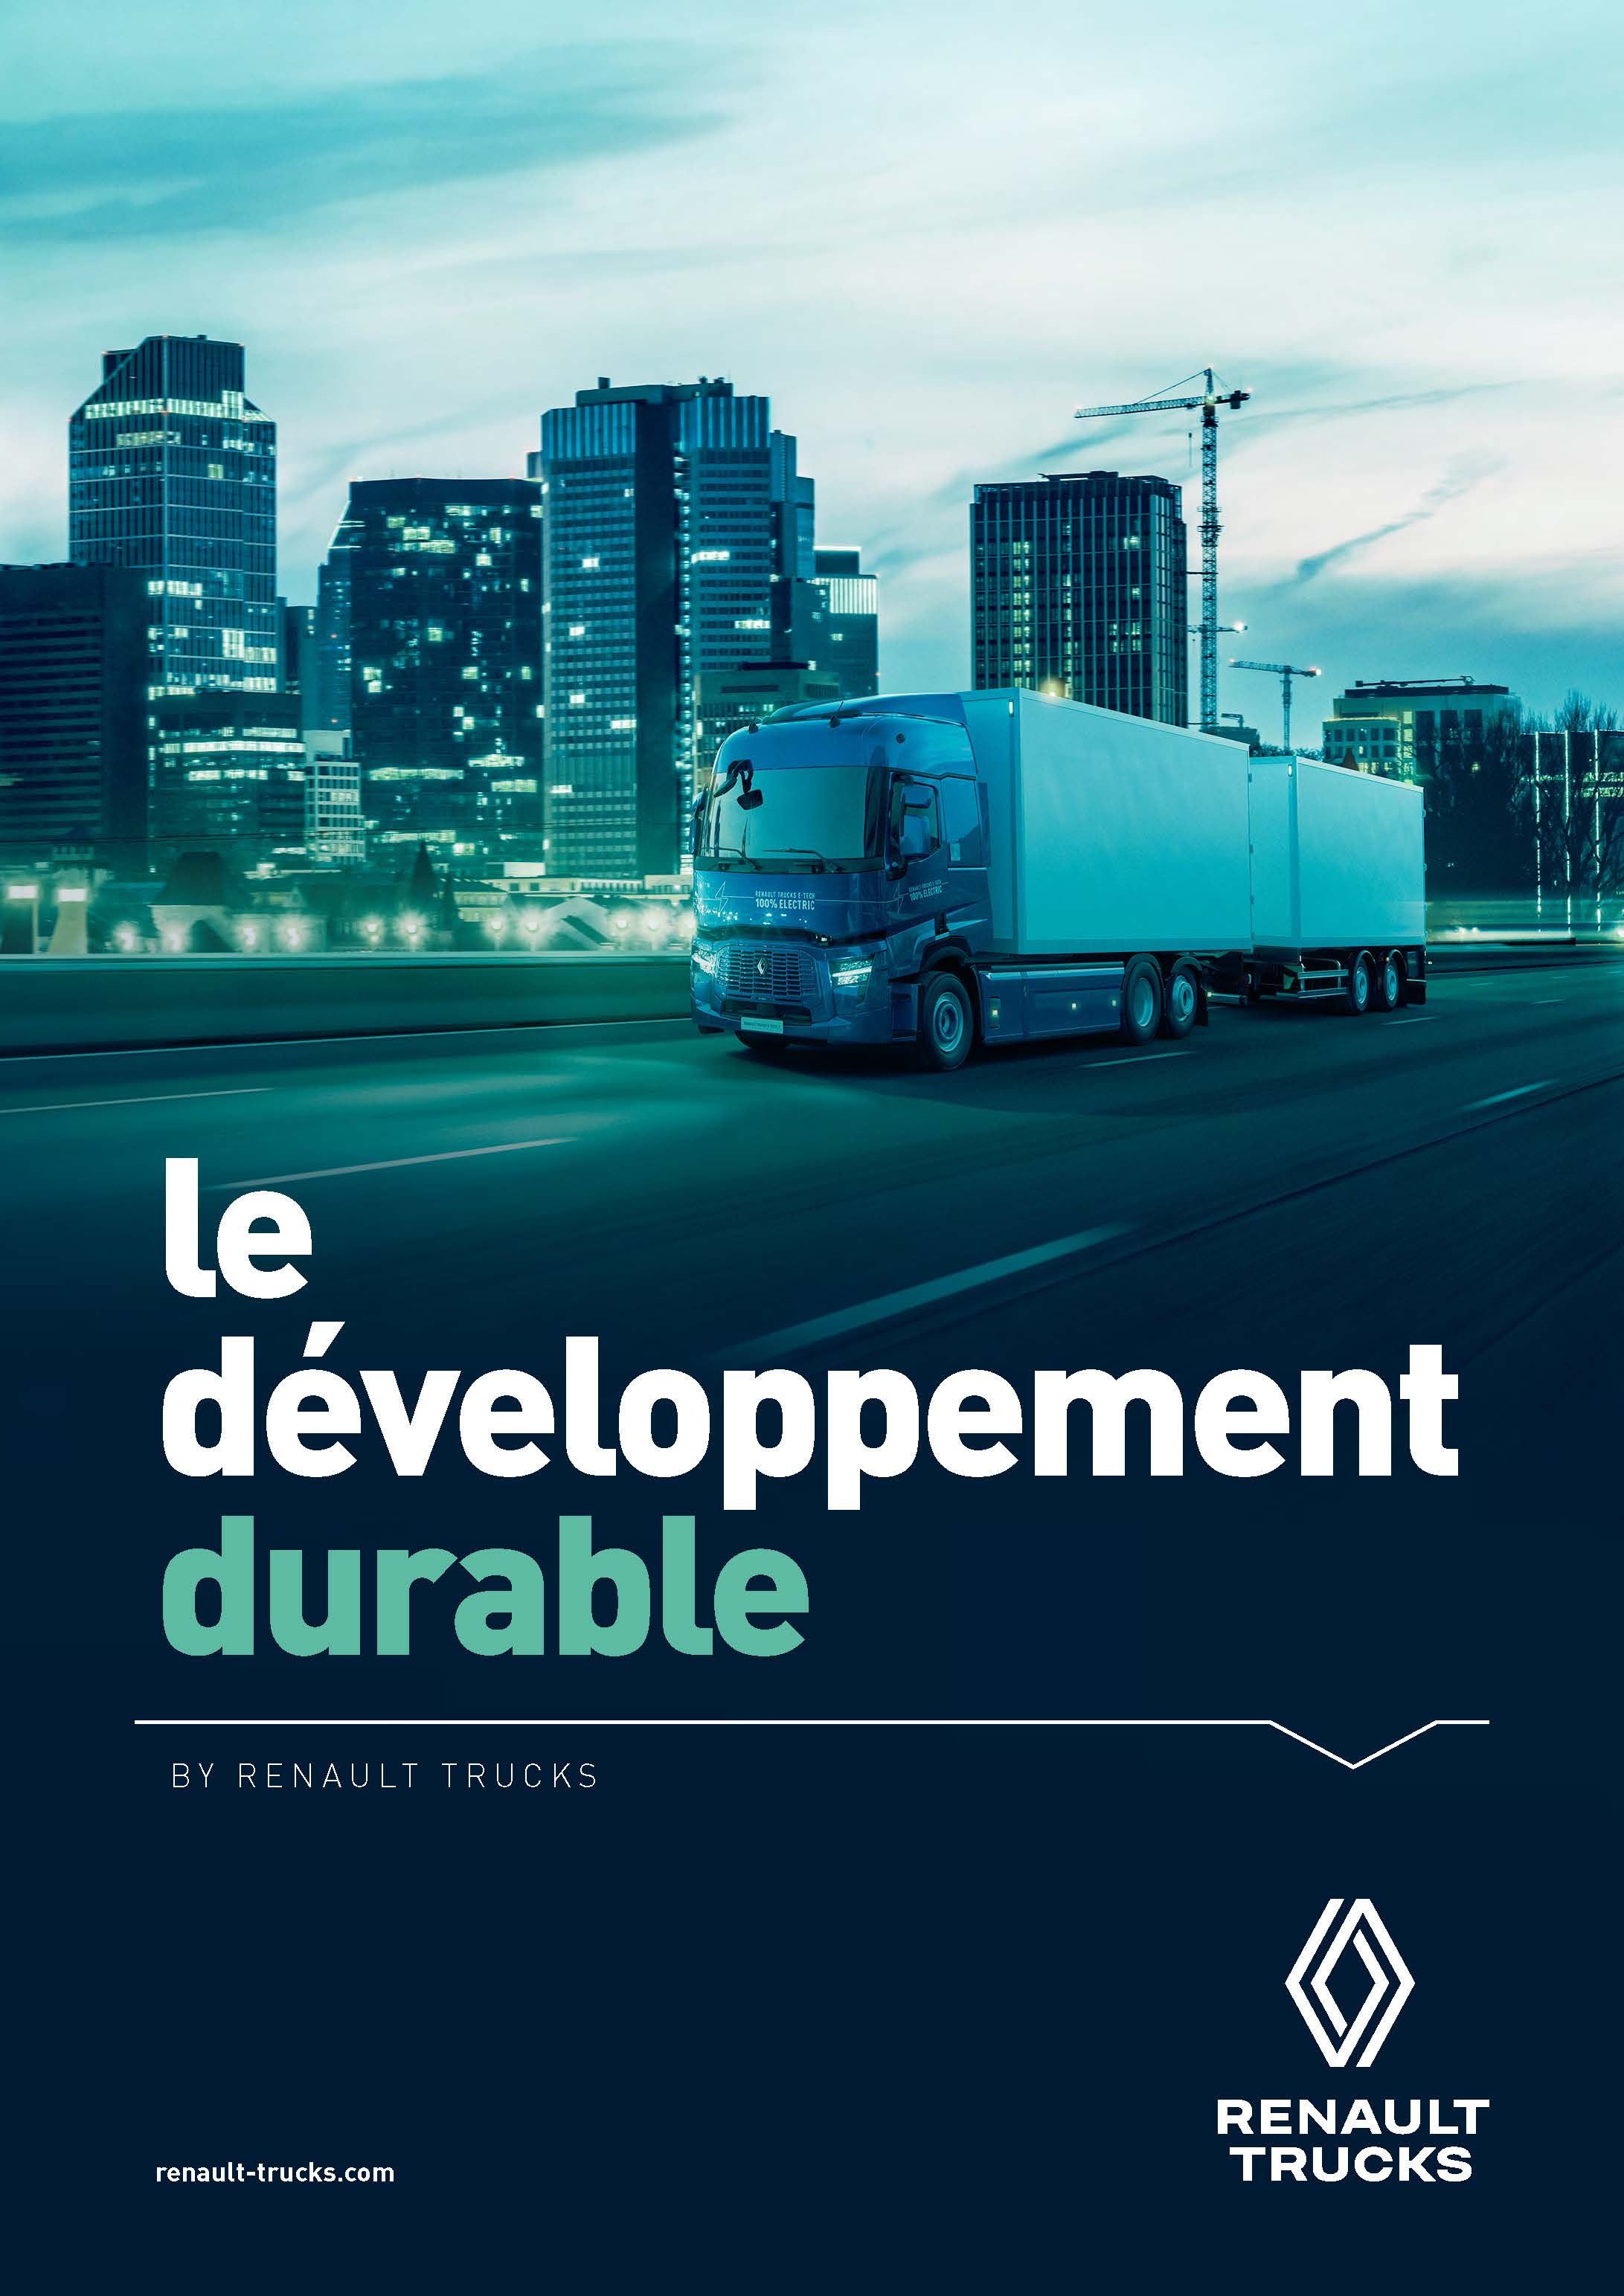 Le développement durable by Renault Trucks